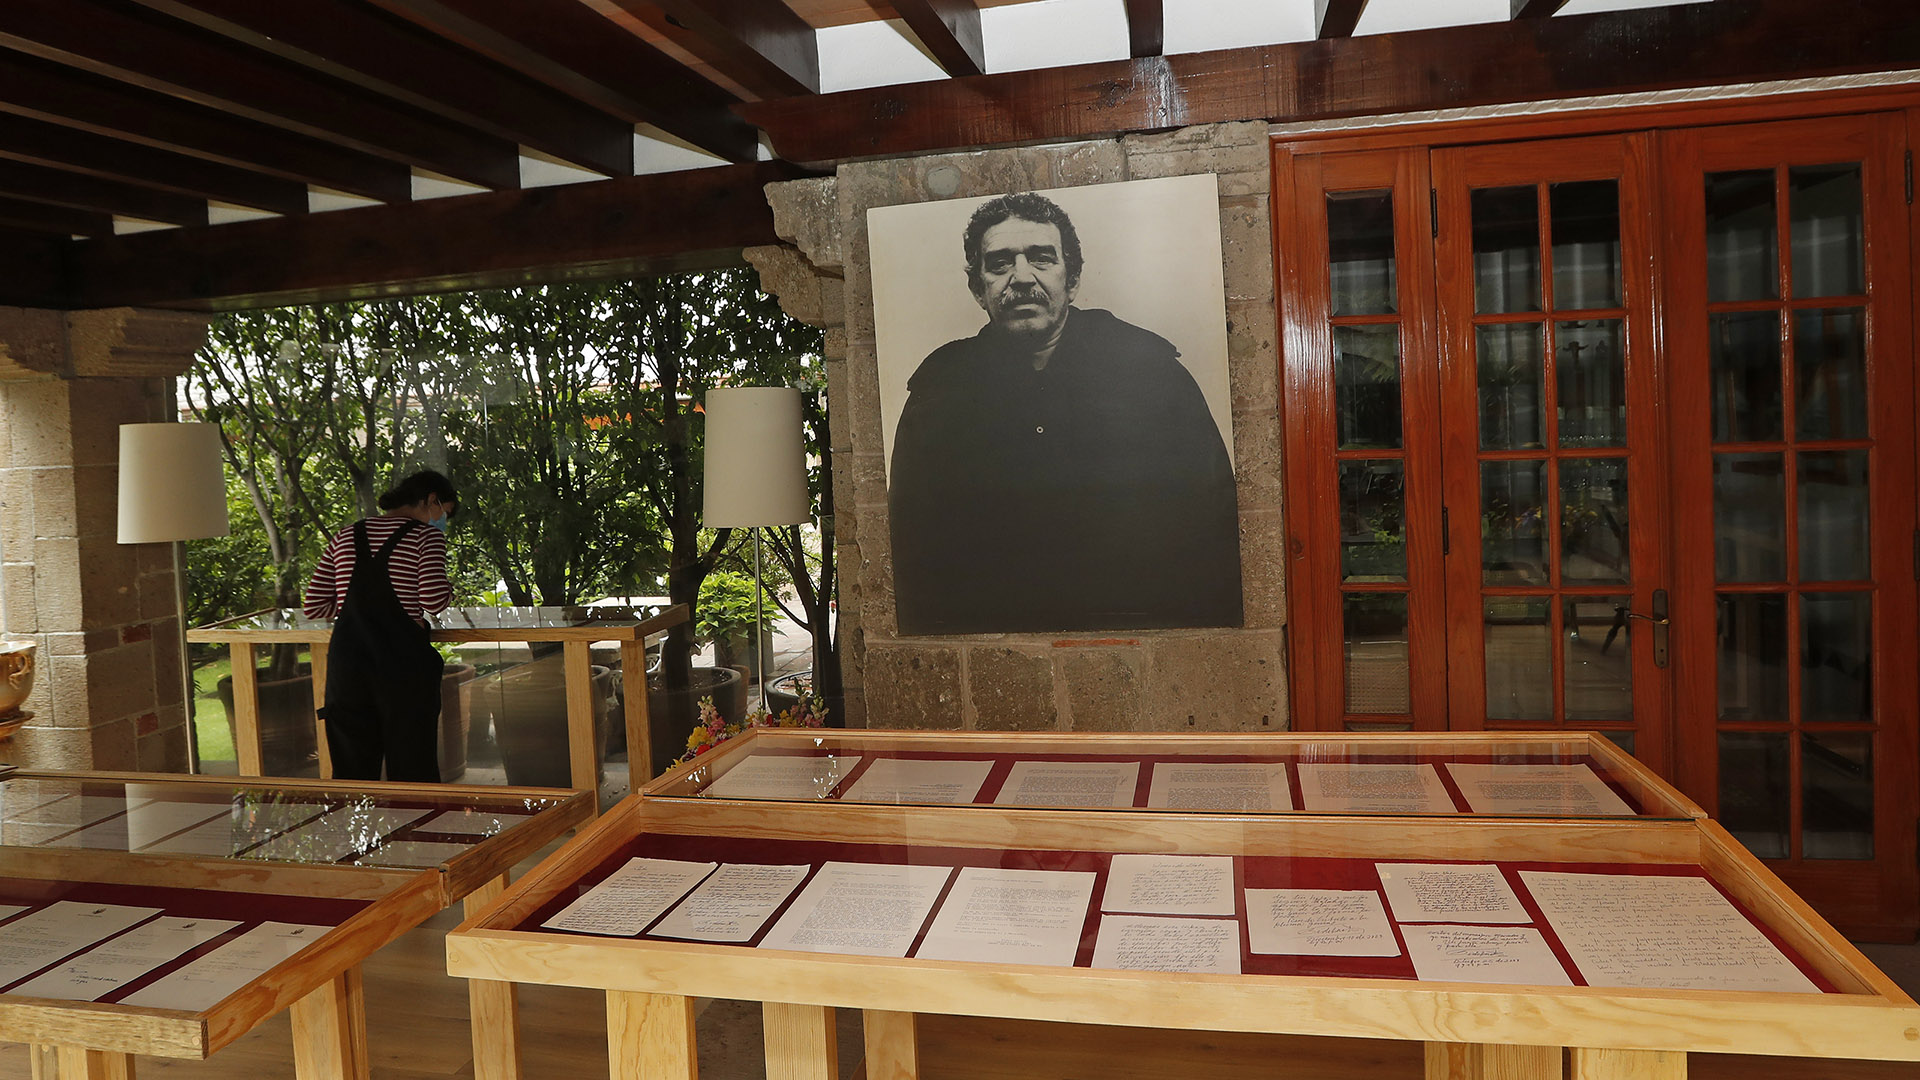 Expuestas. Algunas de las cartas recibidas por el escritor colombiano Gabriel García Márquez. (Foto EFE/ Mario Guzmán)
